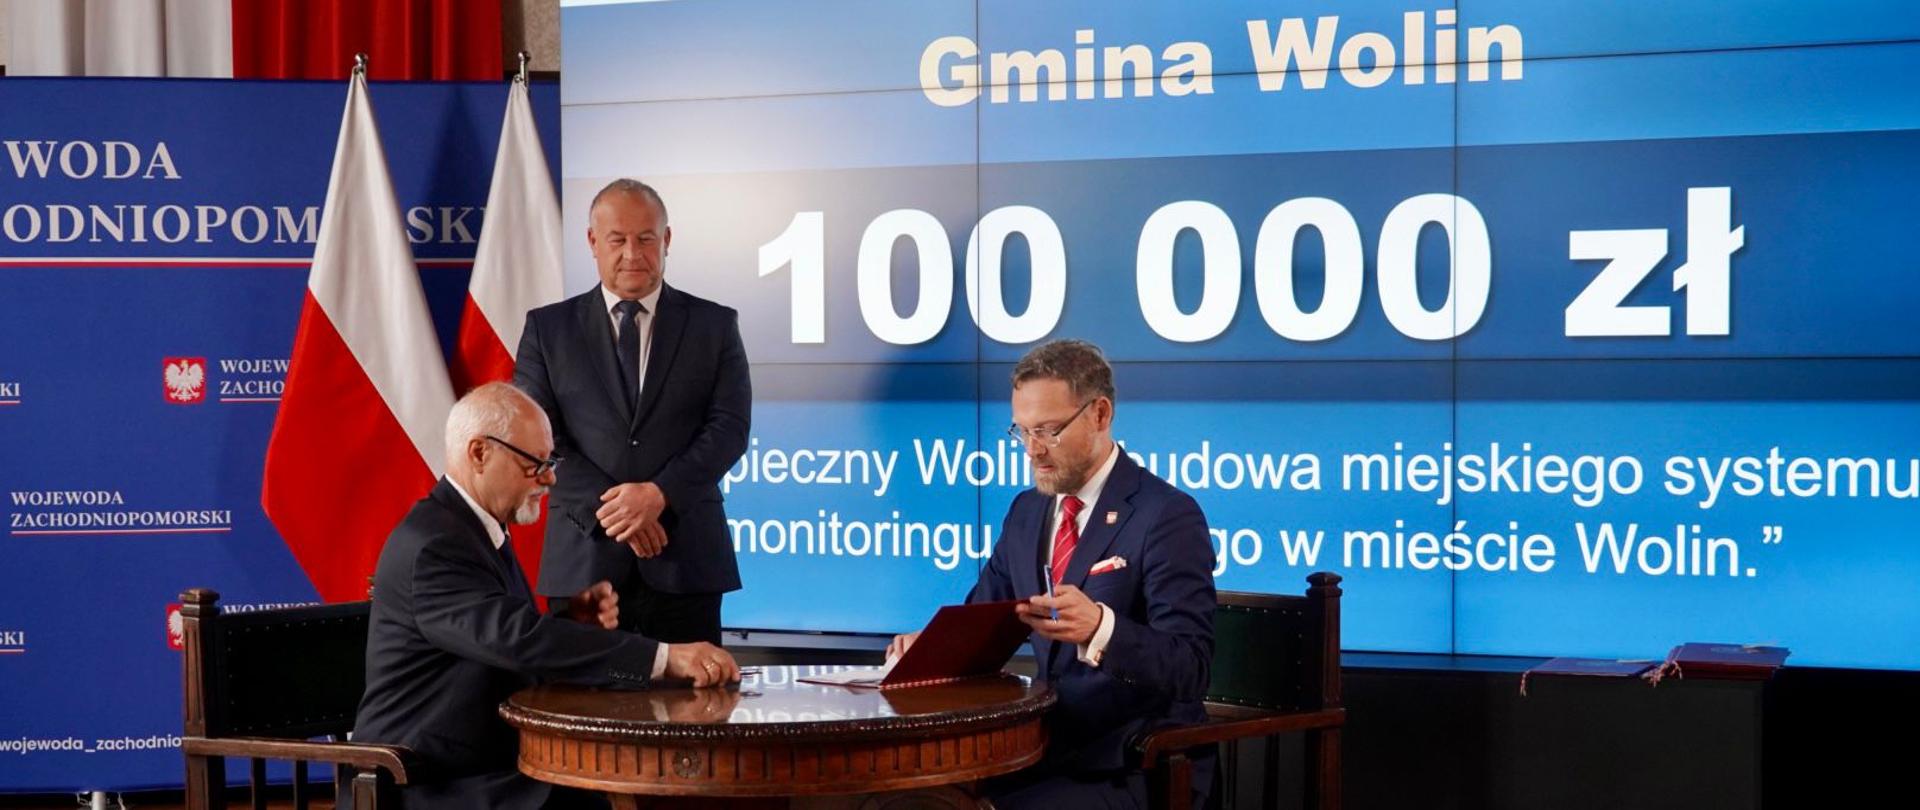 wojewoda Zbigniew Bogucki podpisuje umowę z zastępcą burmistrza Wolina Jarosławem Mikołajczykiem, w obecności posła Artura Szałabawki